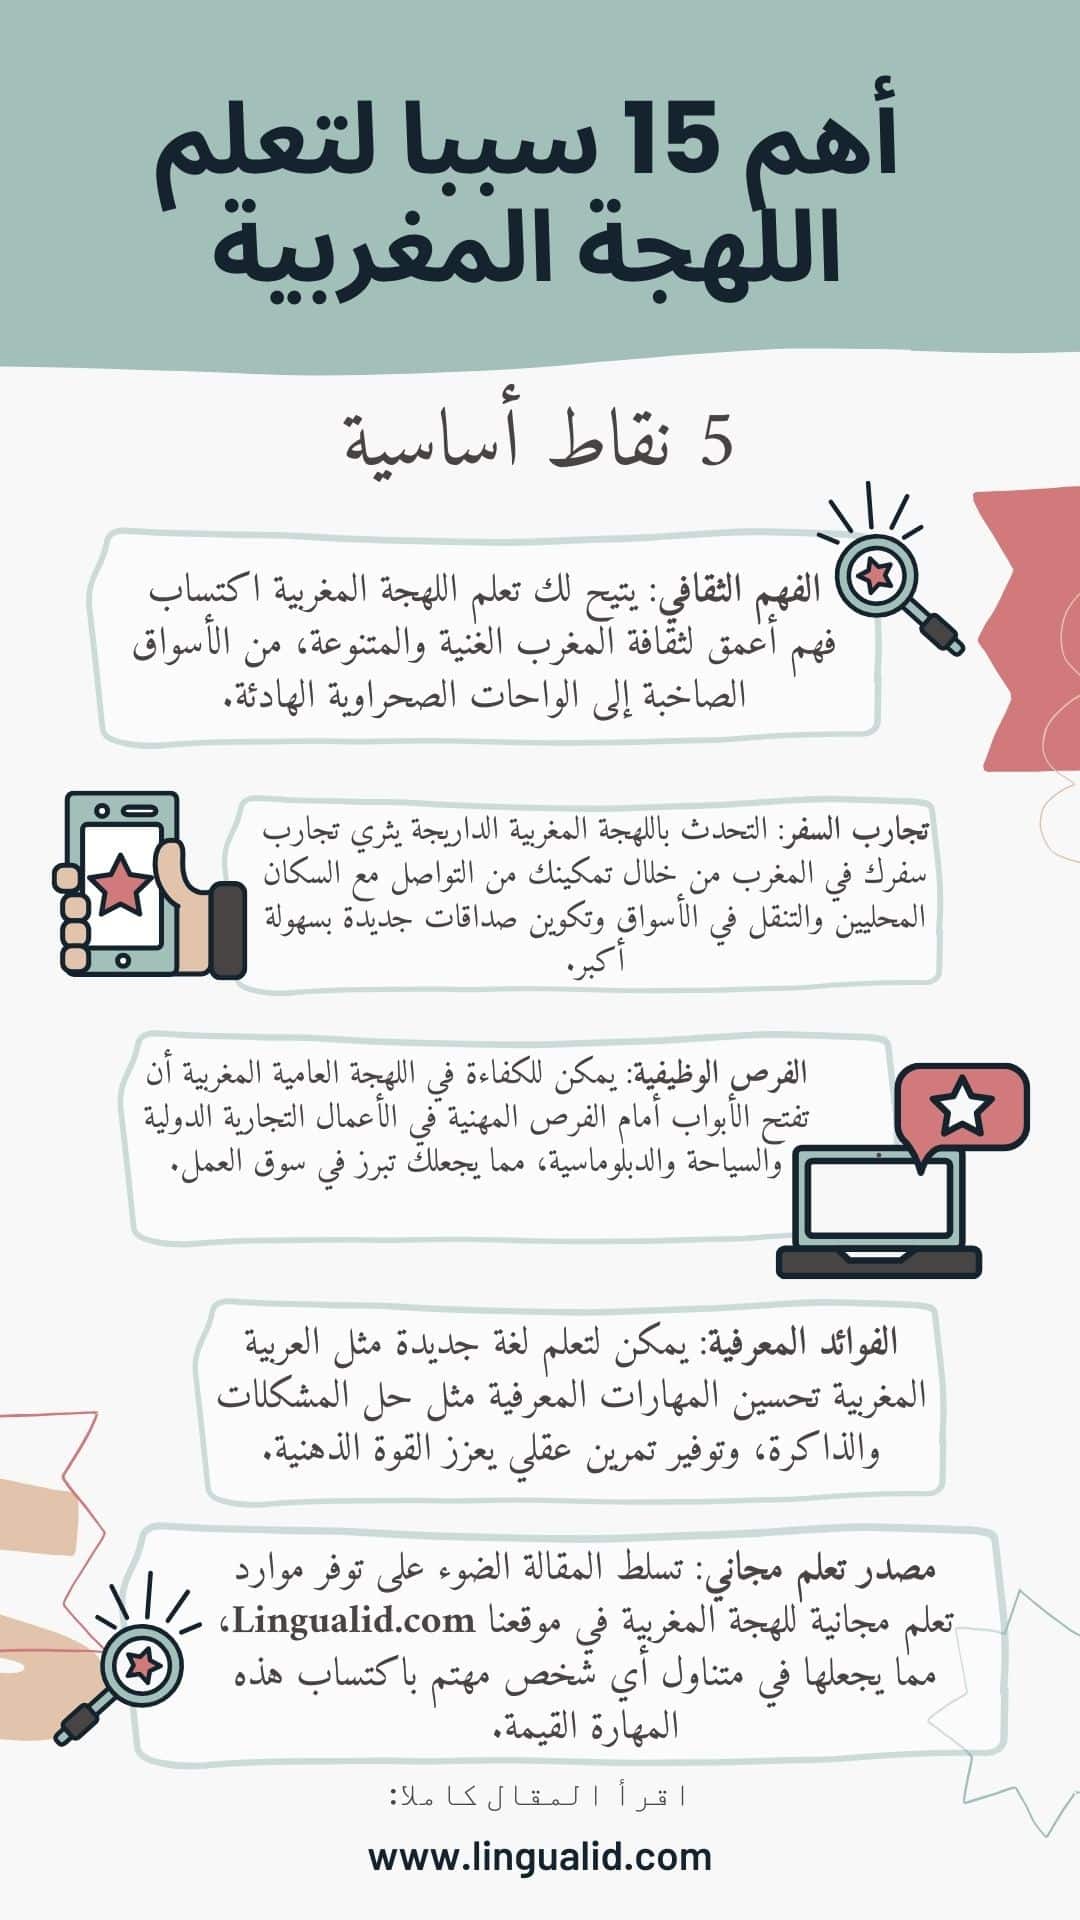 أهم 15 سببا لتعلم اللهجة المغربية الداريجة